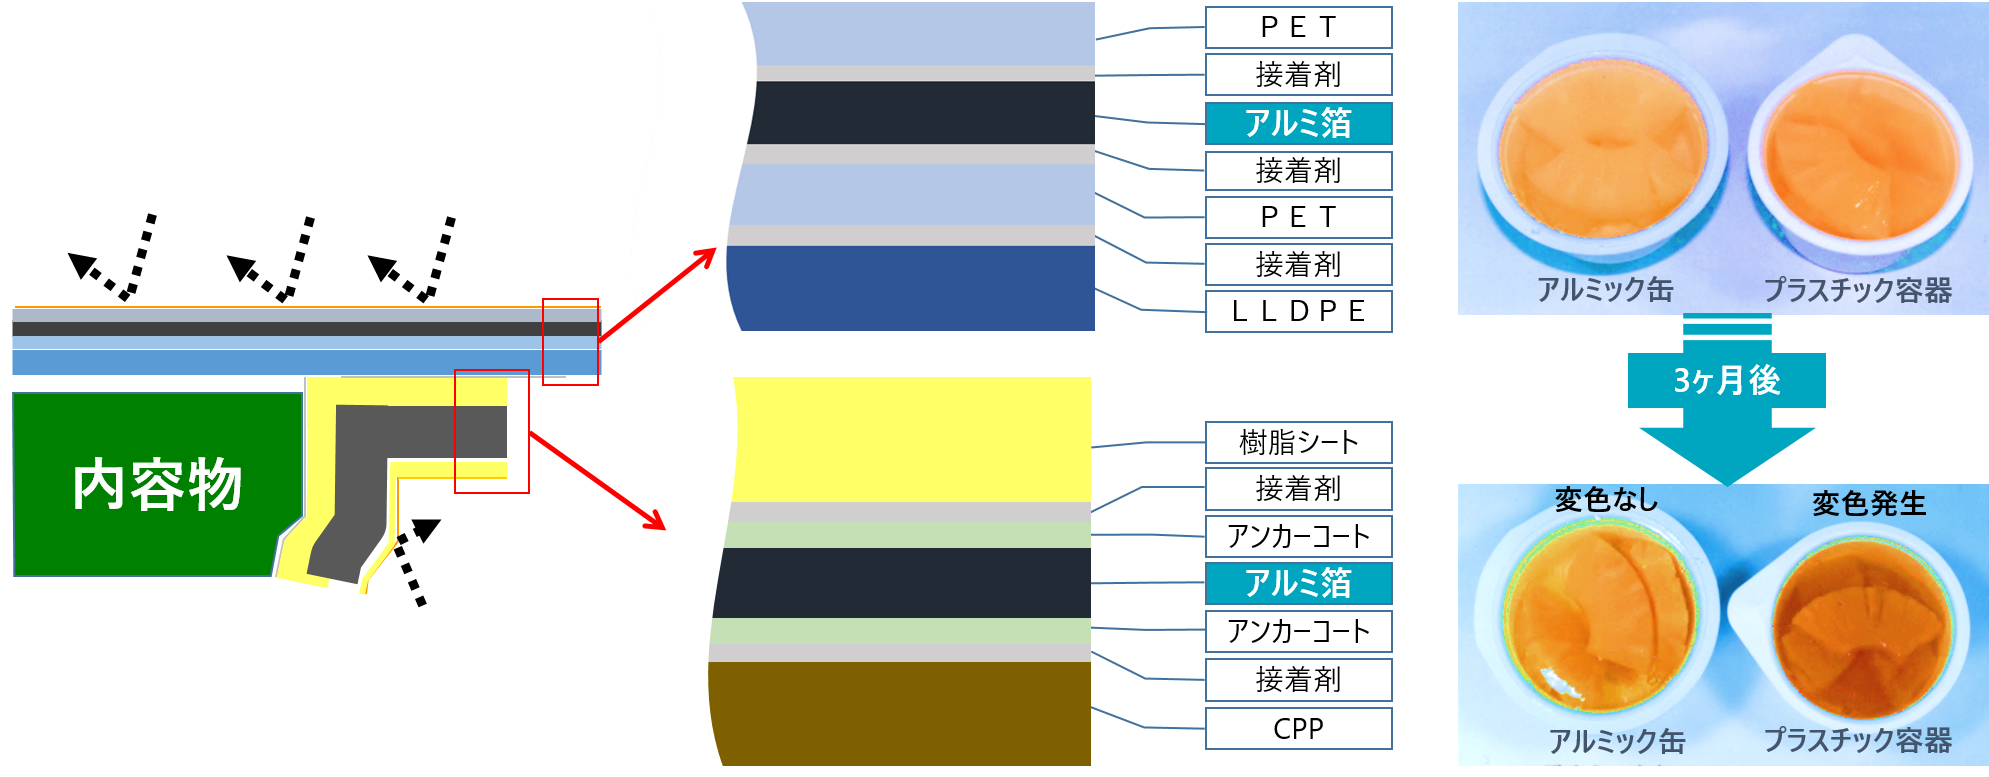 アルミック缶の層構成と長期保存性